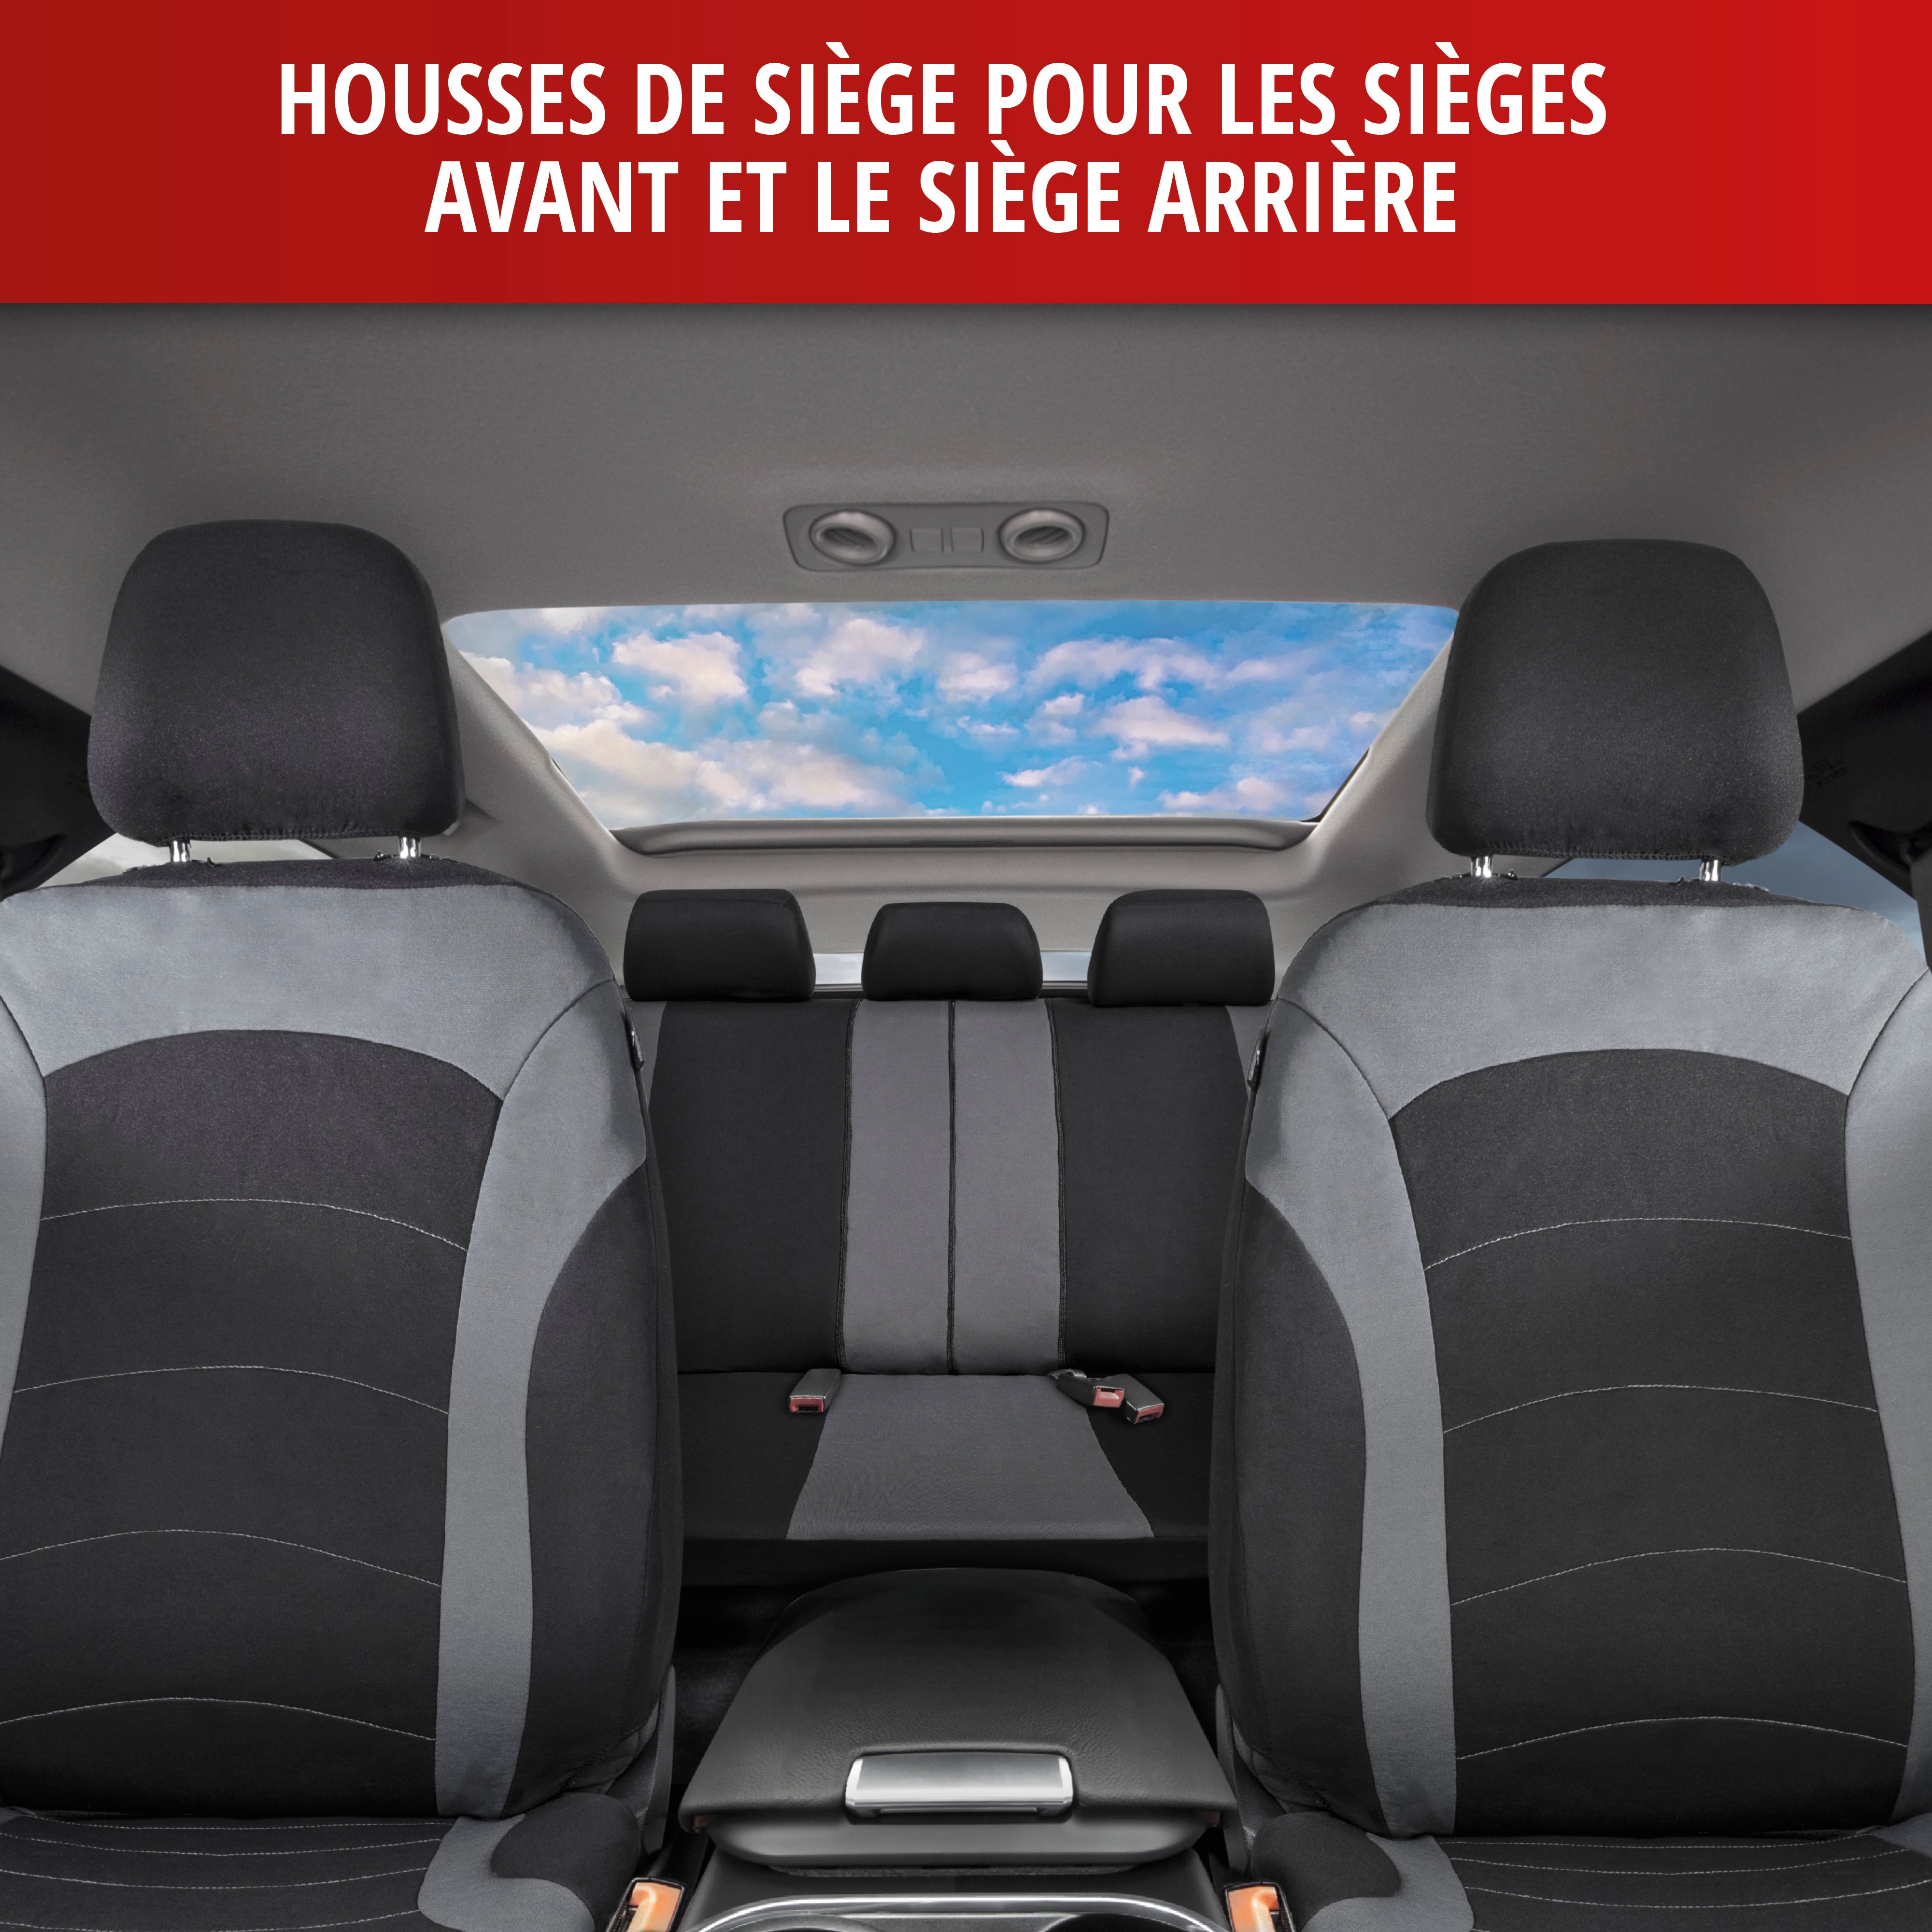 Premium Universel Siège Auto Housses Sitzbezüge cuir synthétique housses de protection bleu 